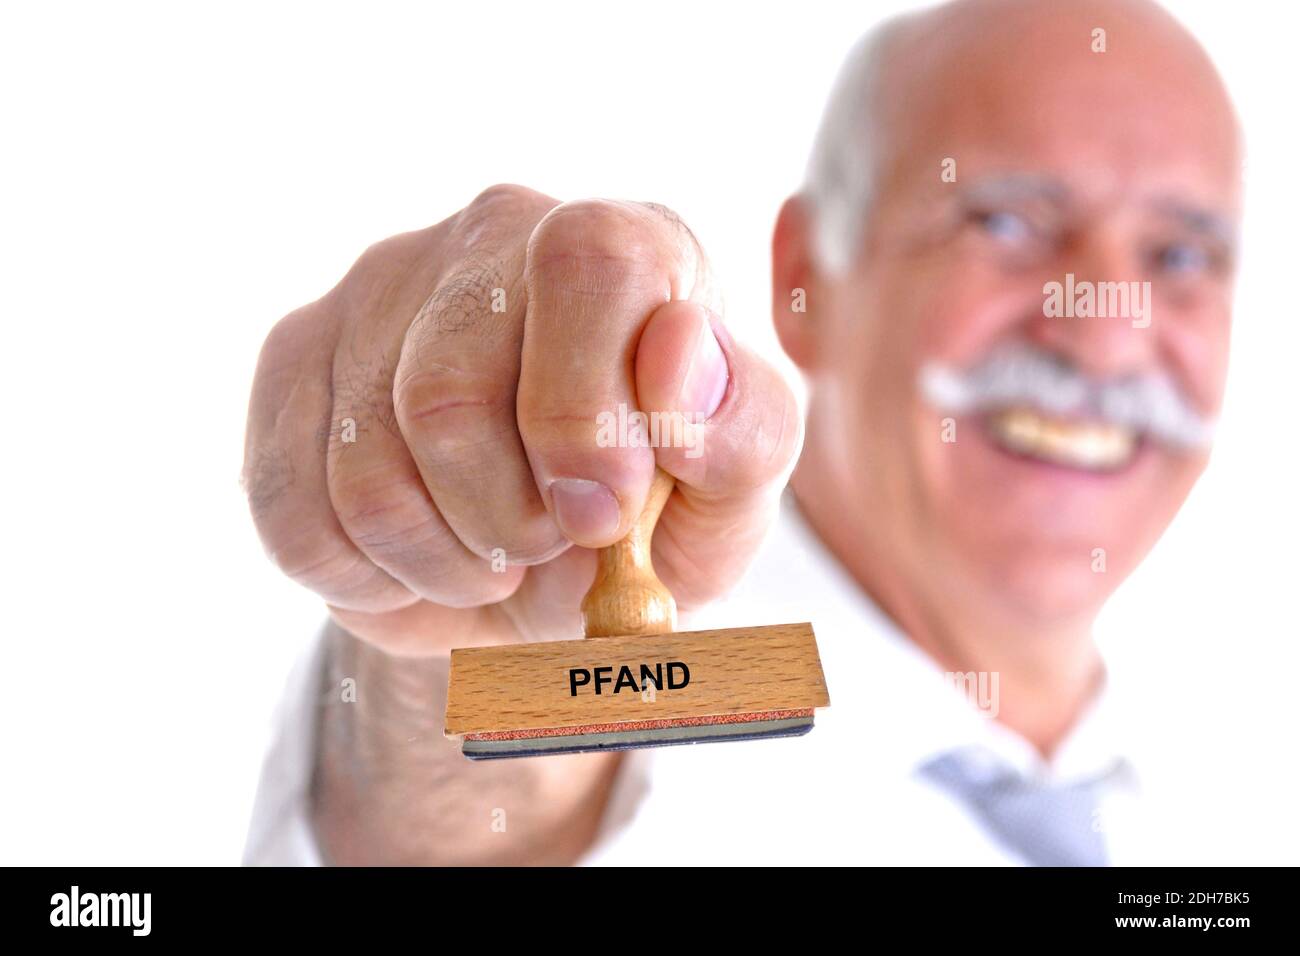 65, 70, Jahre, Mann hält Stempel in der Hand, Aufschrift: Pfand, Sicherheit, Foto Stock